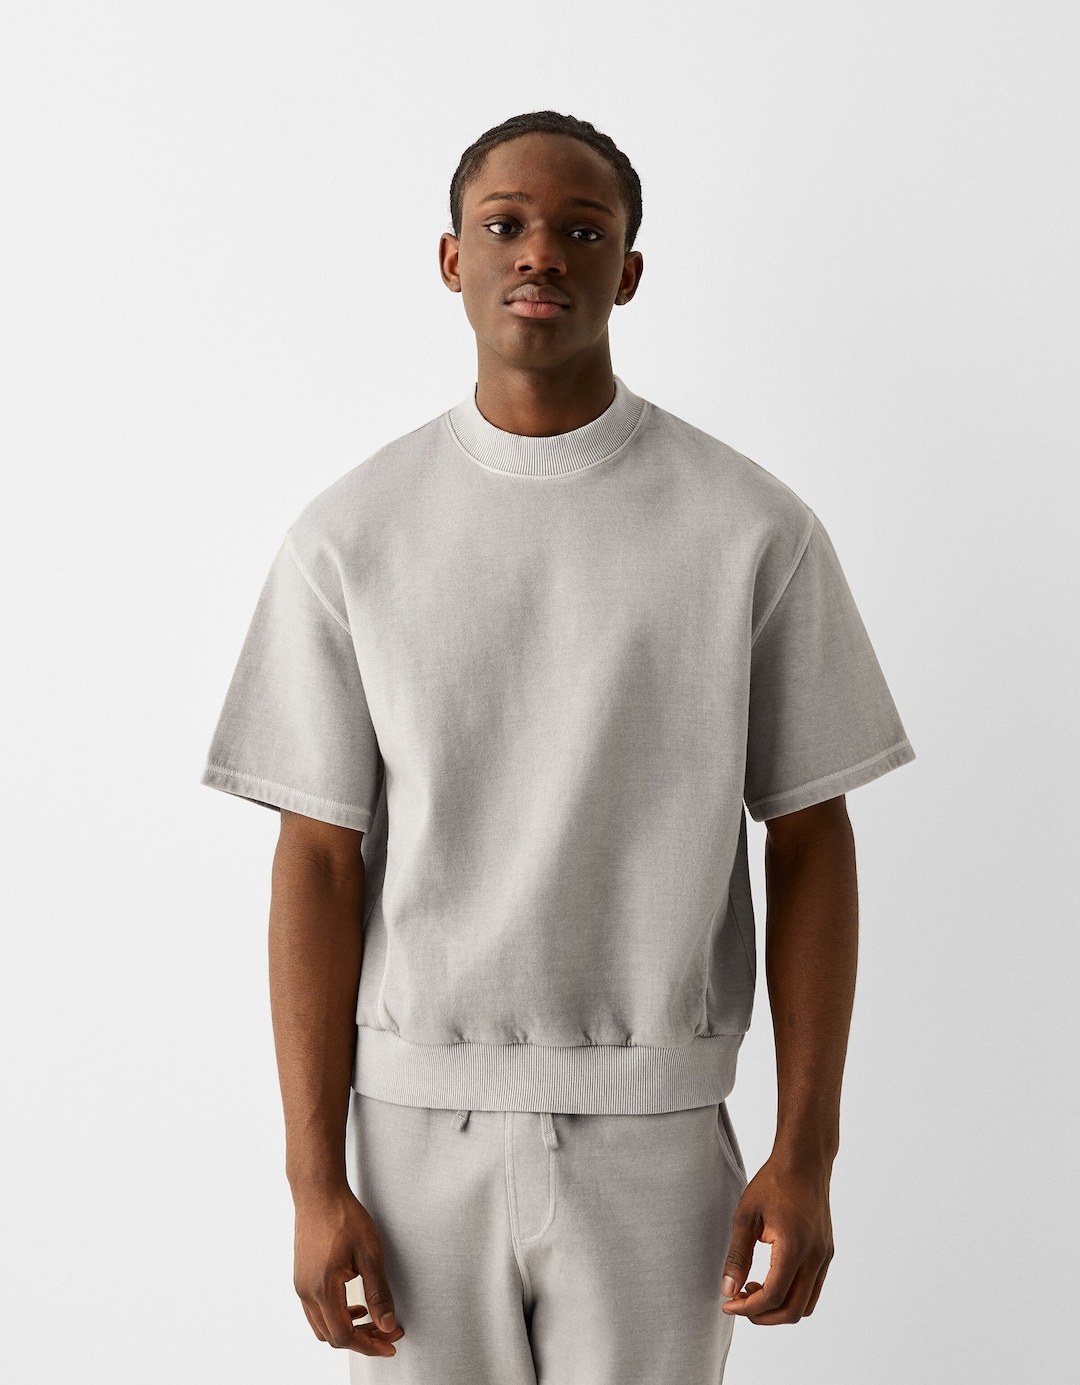 Plüsch-T-Shirt aus Interlock im Washed-Look mit kurzen Ärmeln und Patentmuster